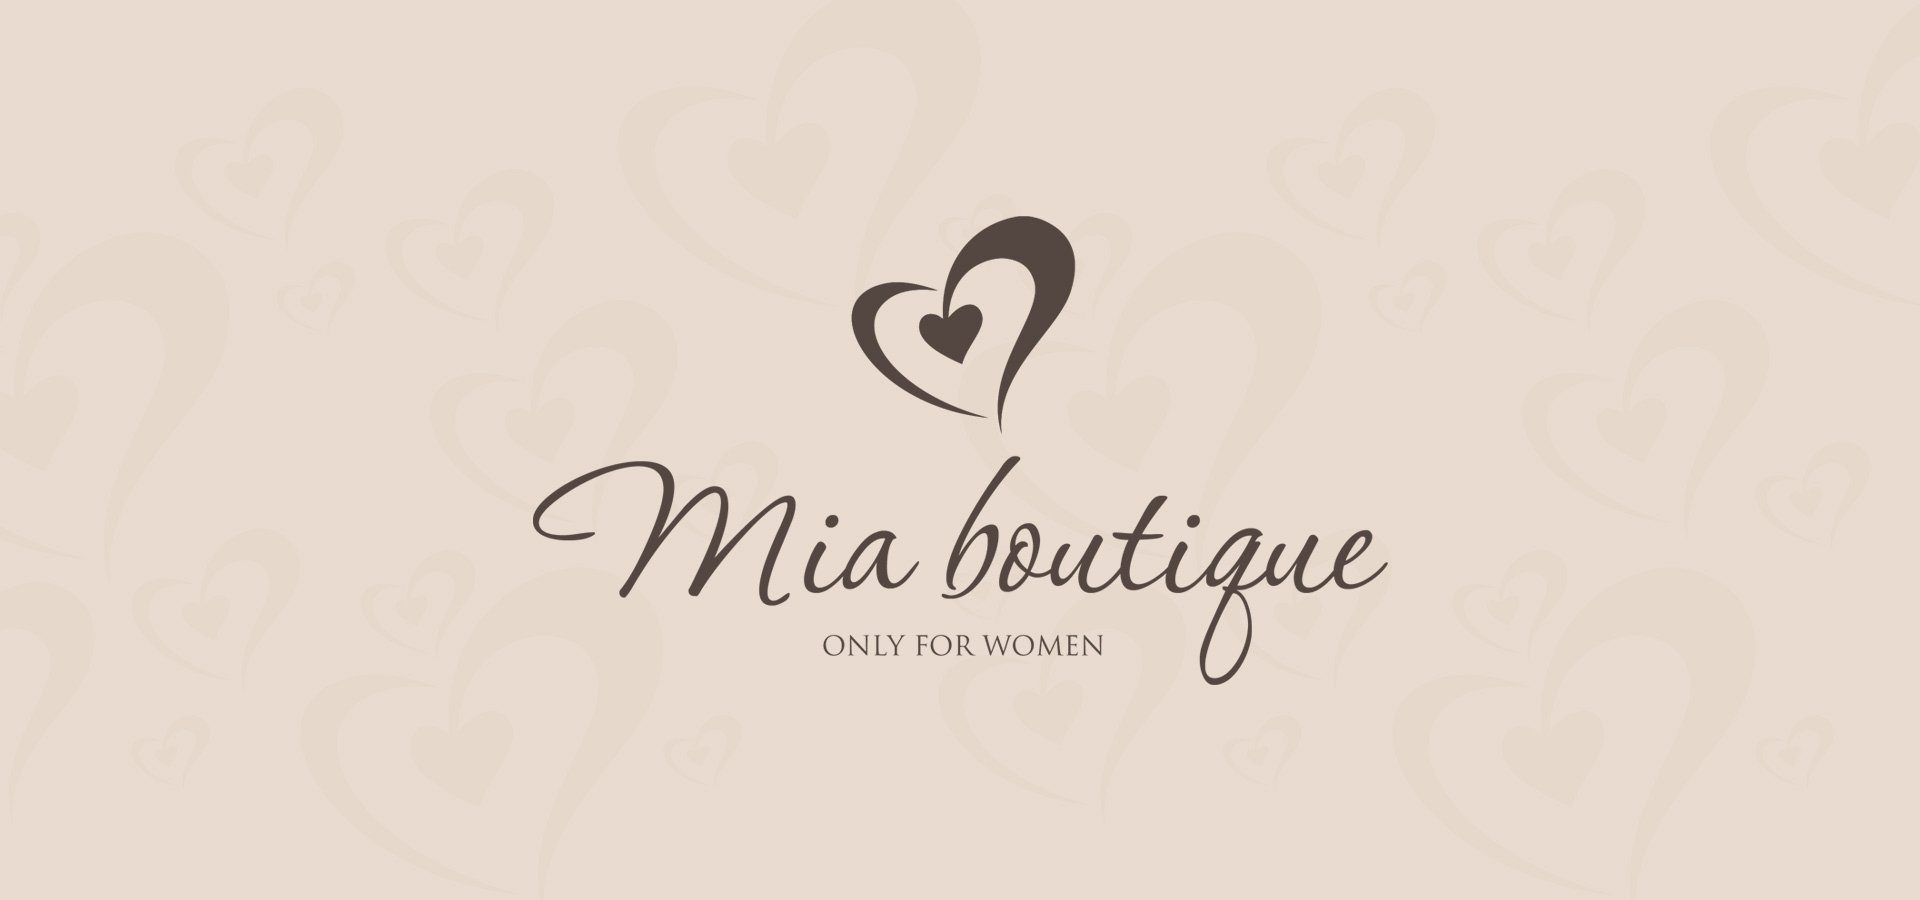 Boutique ru. Логотип для магазина женской одежды. Красивый логотип для магазина одежды. Логотип бутика женской одежды. Красивый фон для логотипа магазина одежды.